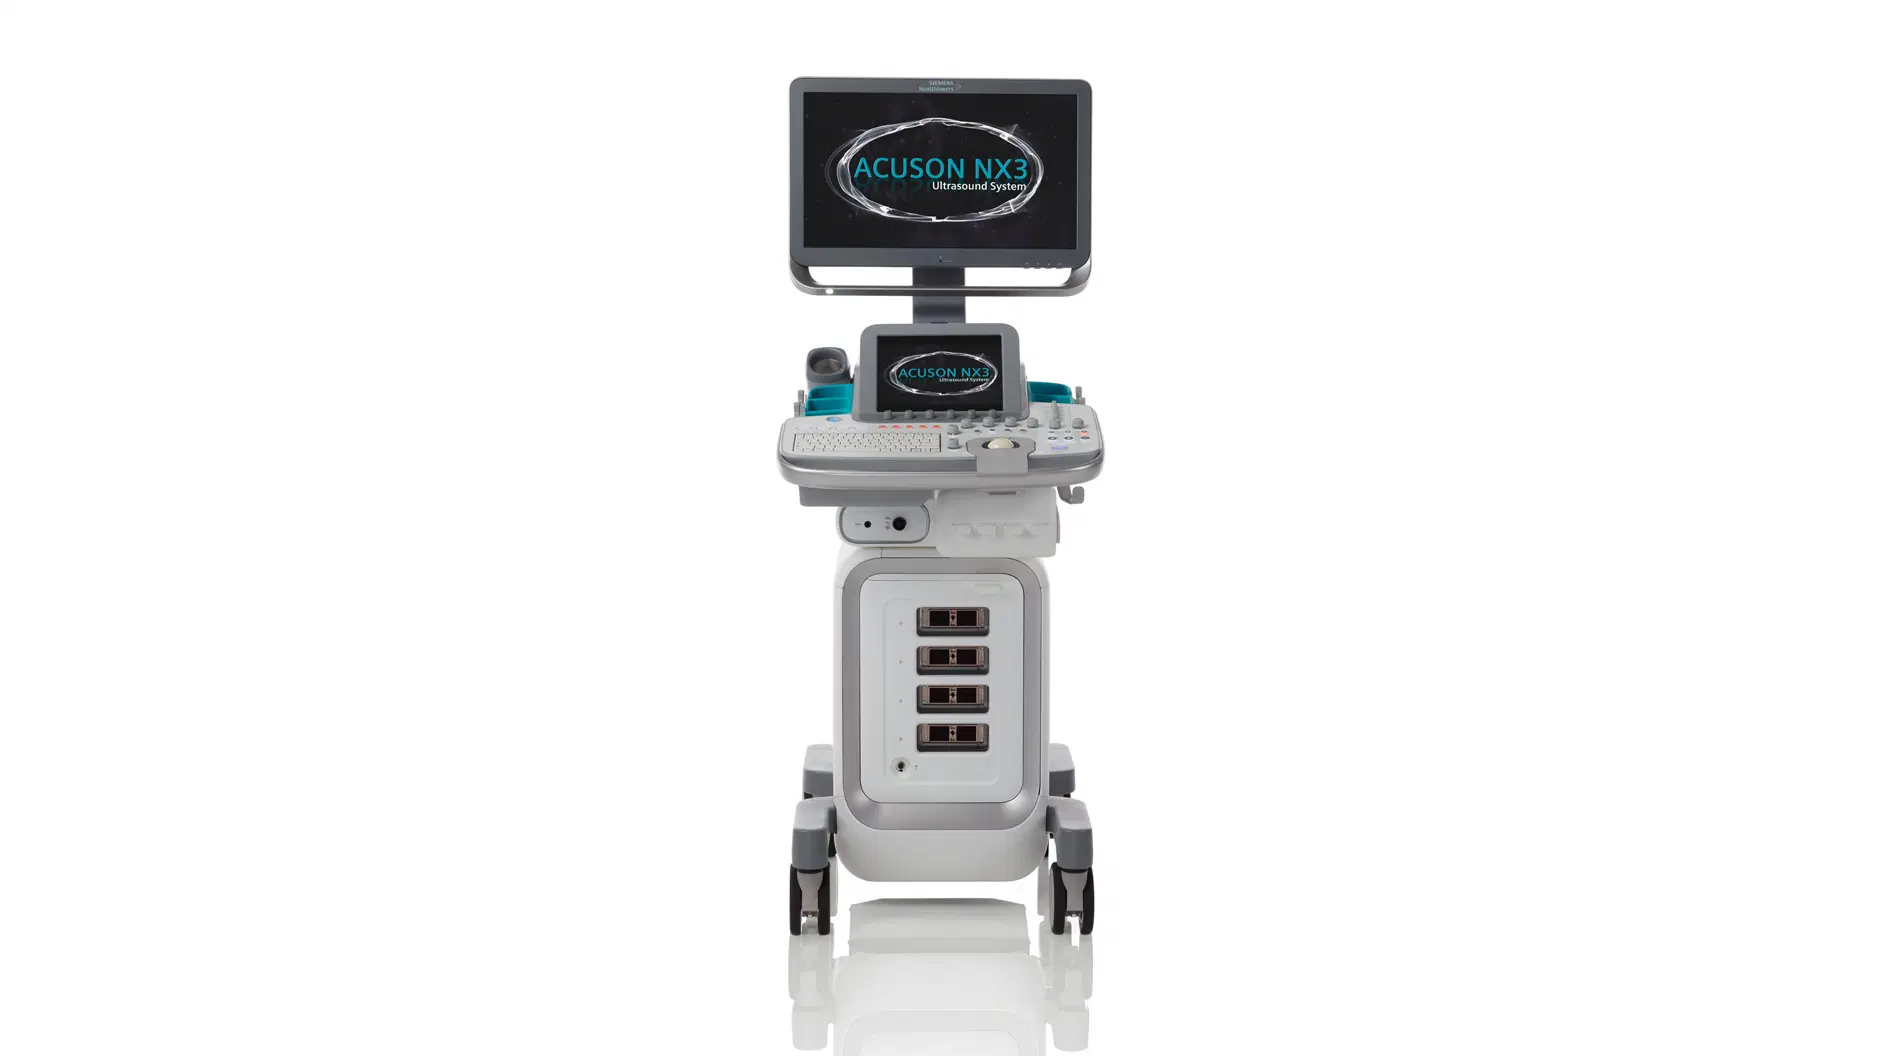 เครื่องตรวจอวัยวะภายในด้วยคลื่นเสียงความถี่สูงชนิดสี 2 หัวตรวจ ACUSON NX3 Ultrasound System Siemens